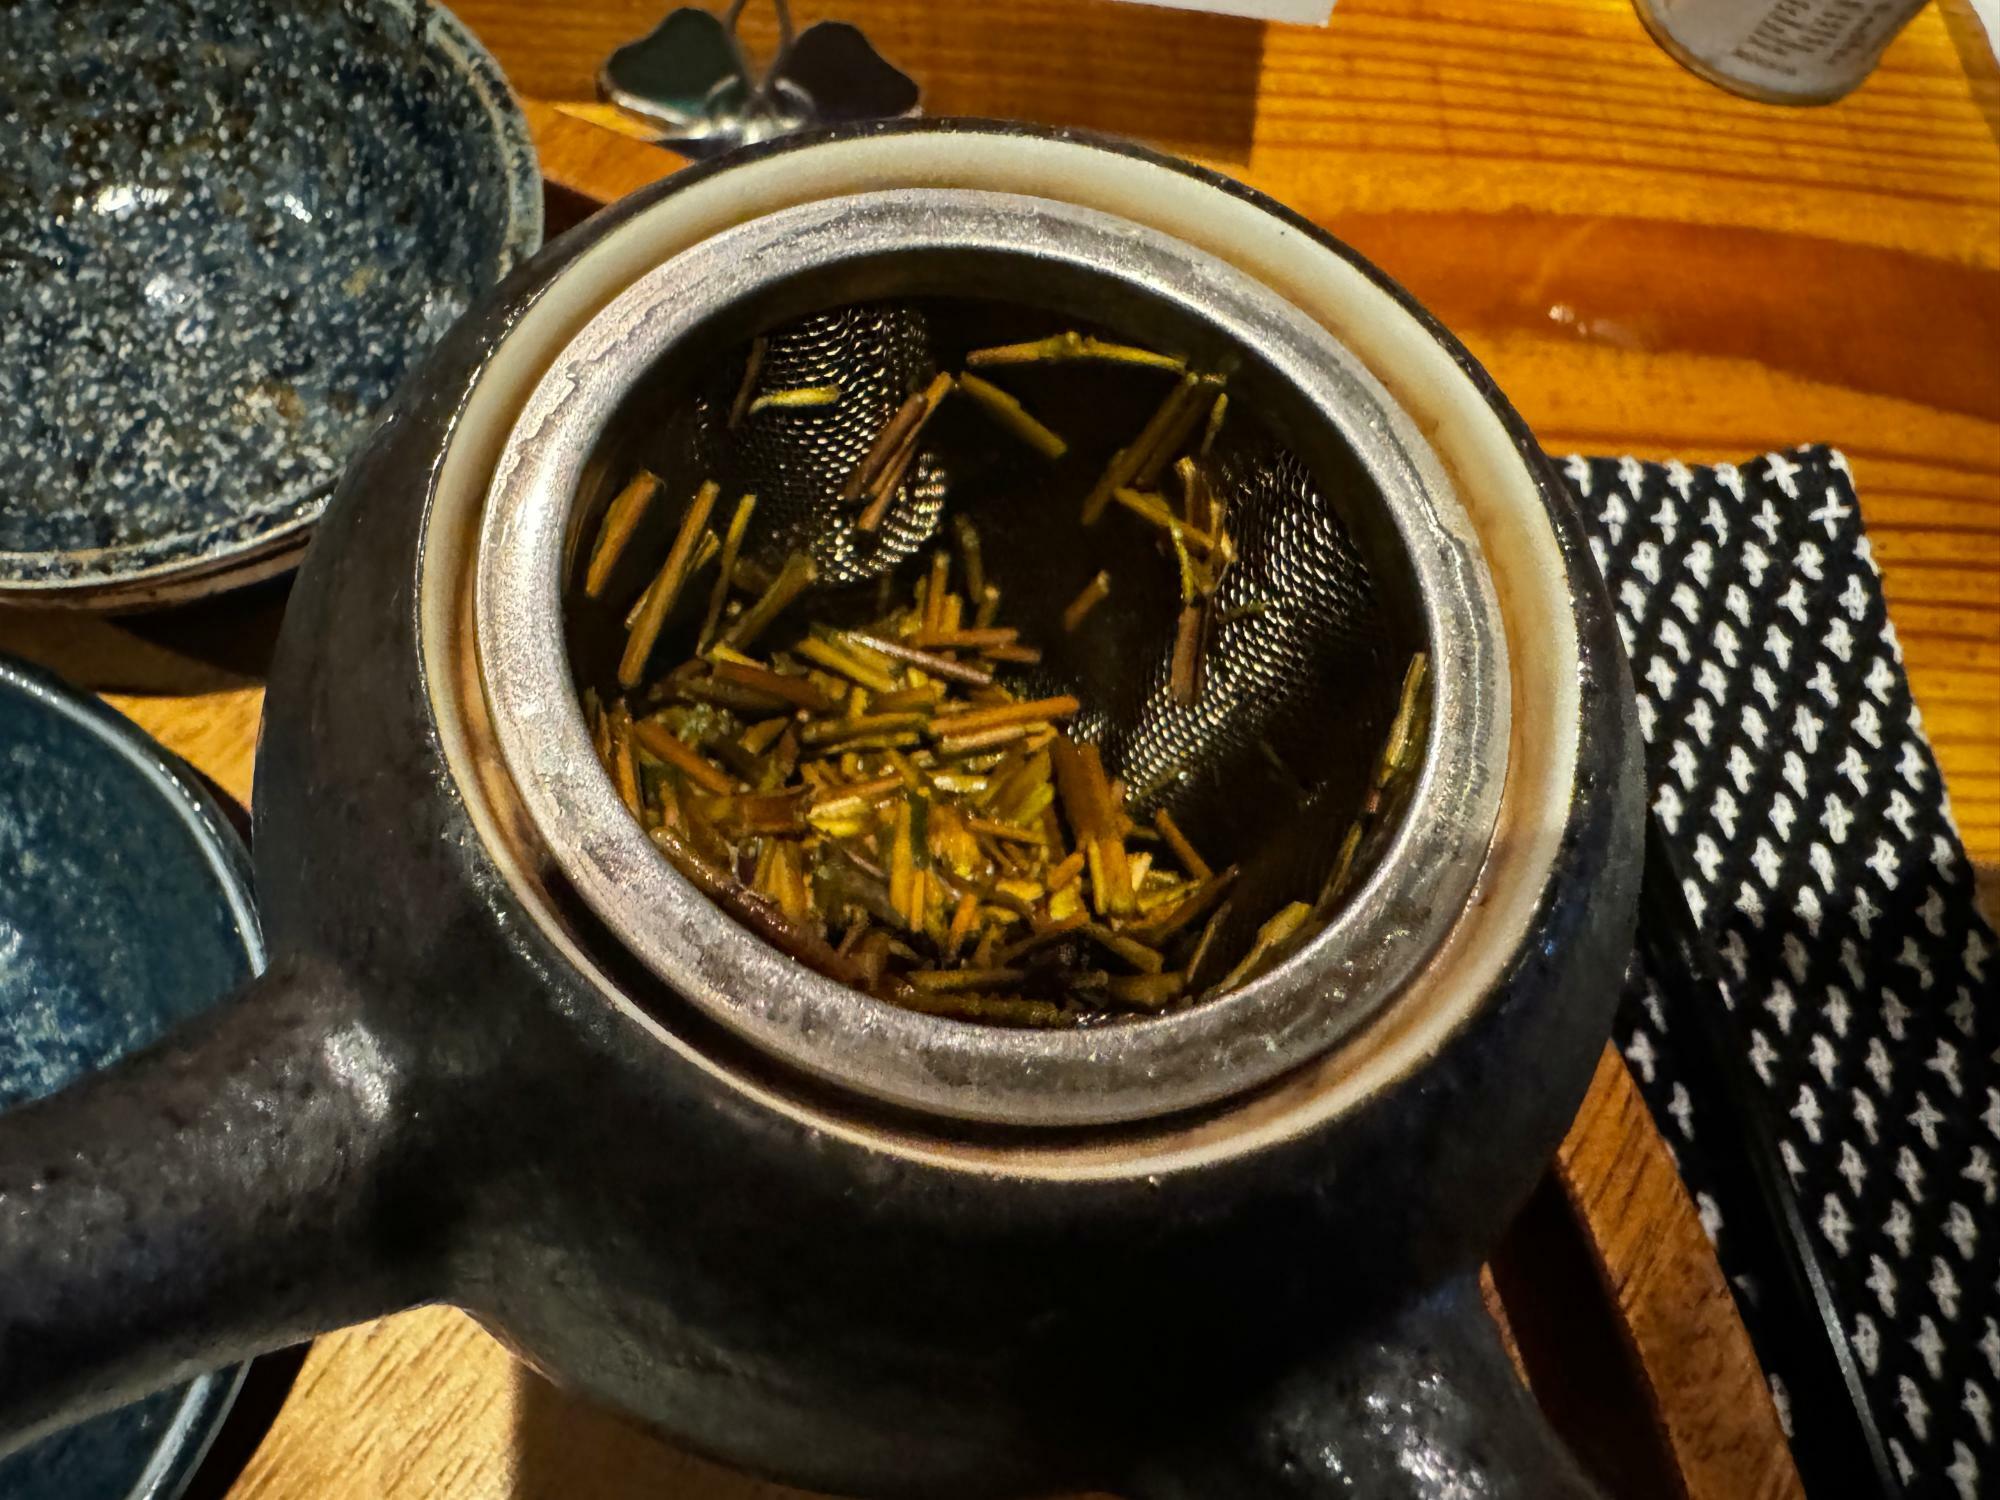 「加賀棒茶」とは初めて聞きました。